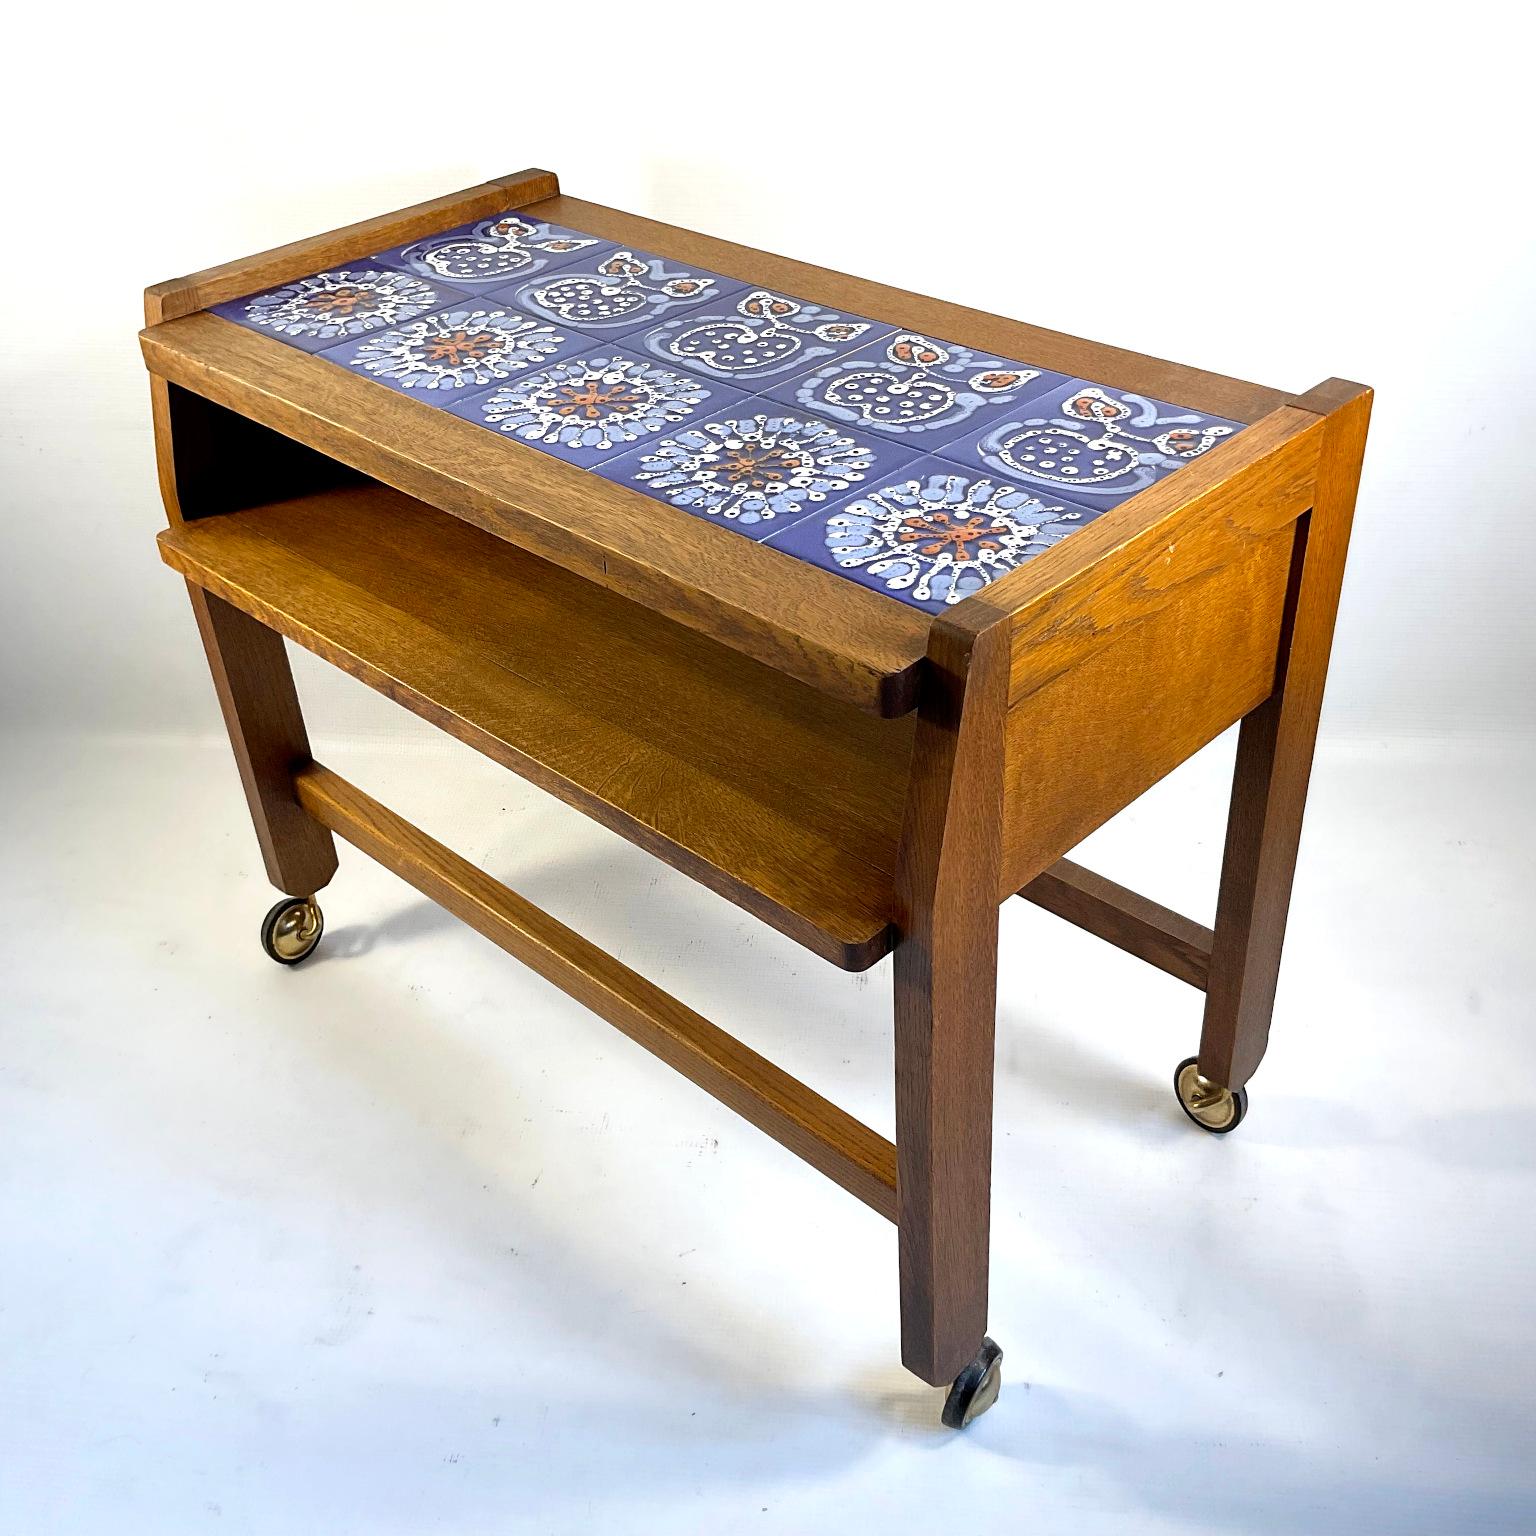 Table d'appoint ou console Guillerme et Chambron des années 1960 avec un motif de carreaux de céramique bleue réalisé par Boleslaw Danikowski, céramiste mandaté par les créateurs Guillerme et Chambron.
Édité par 